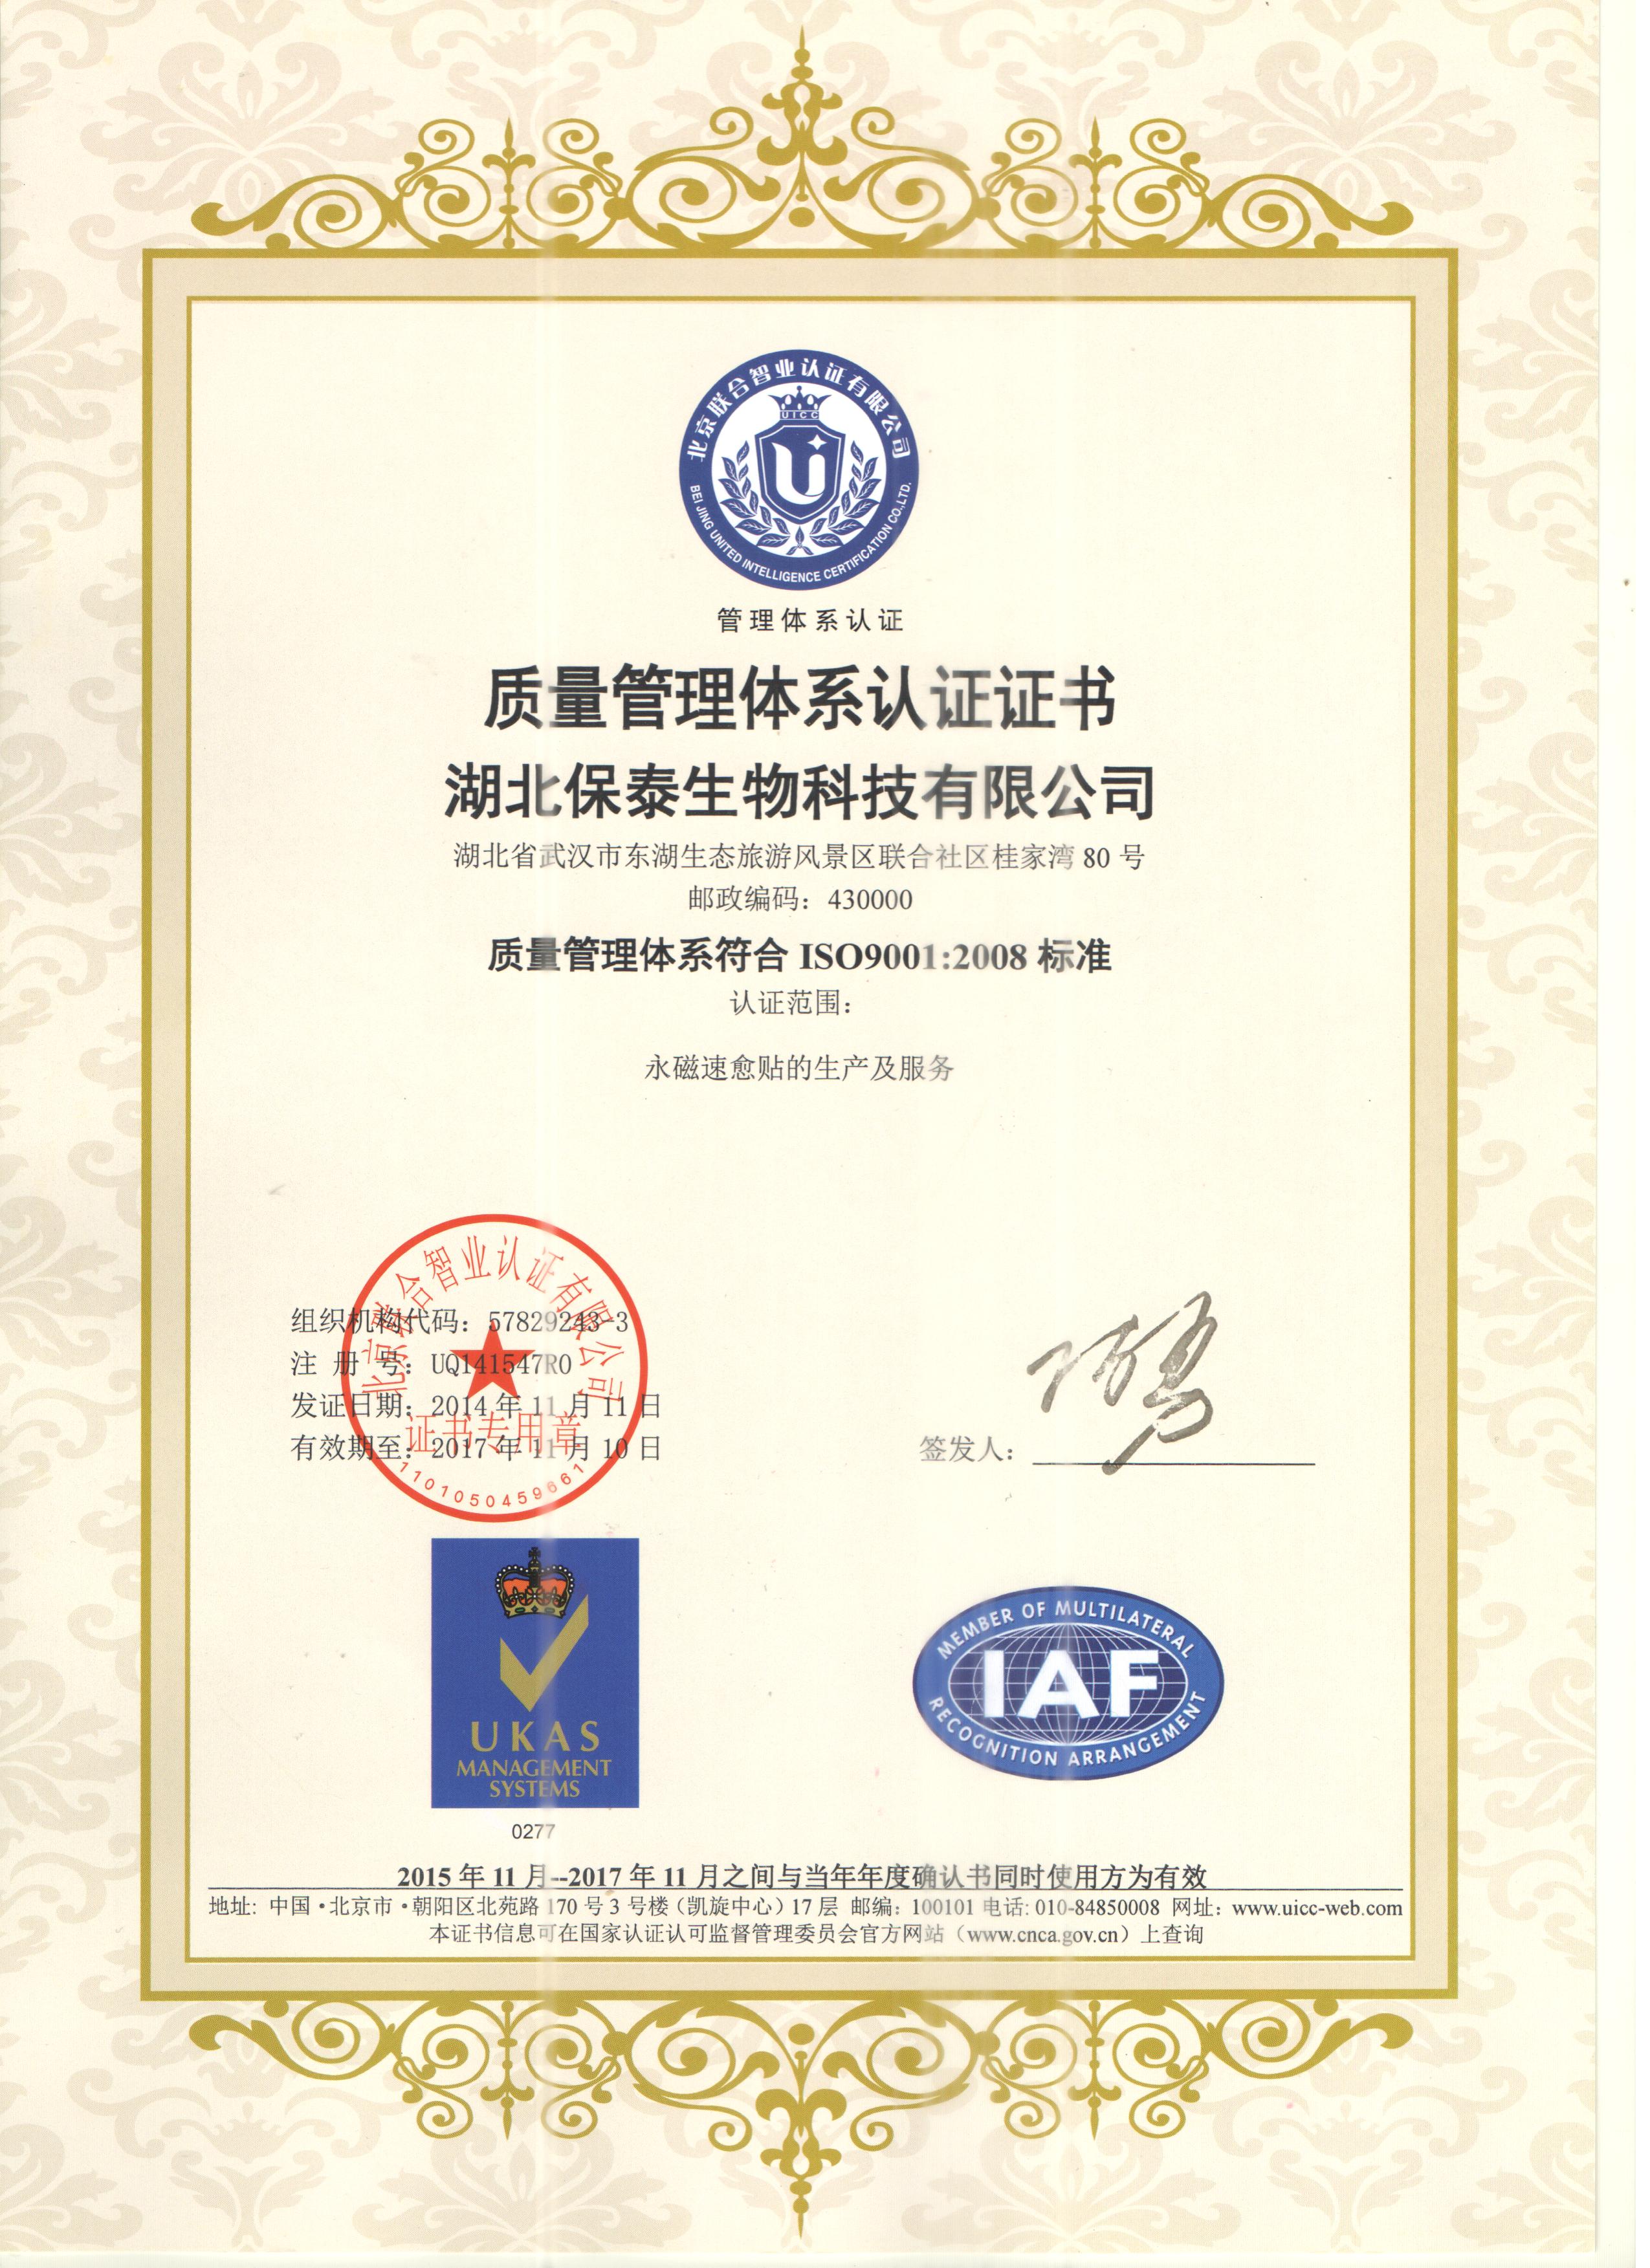  热烈庆祝我公司获得质量管理体系符合ISO9001:2008标准认证